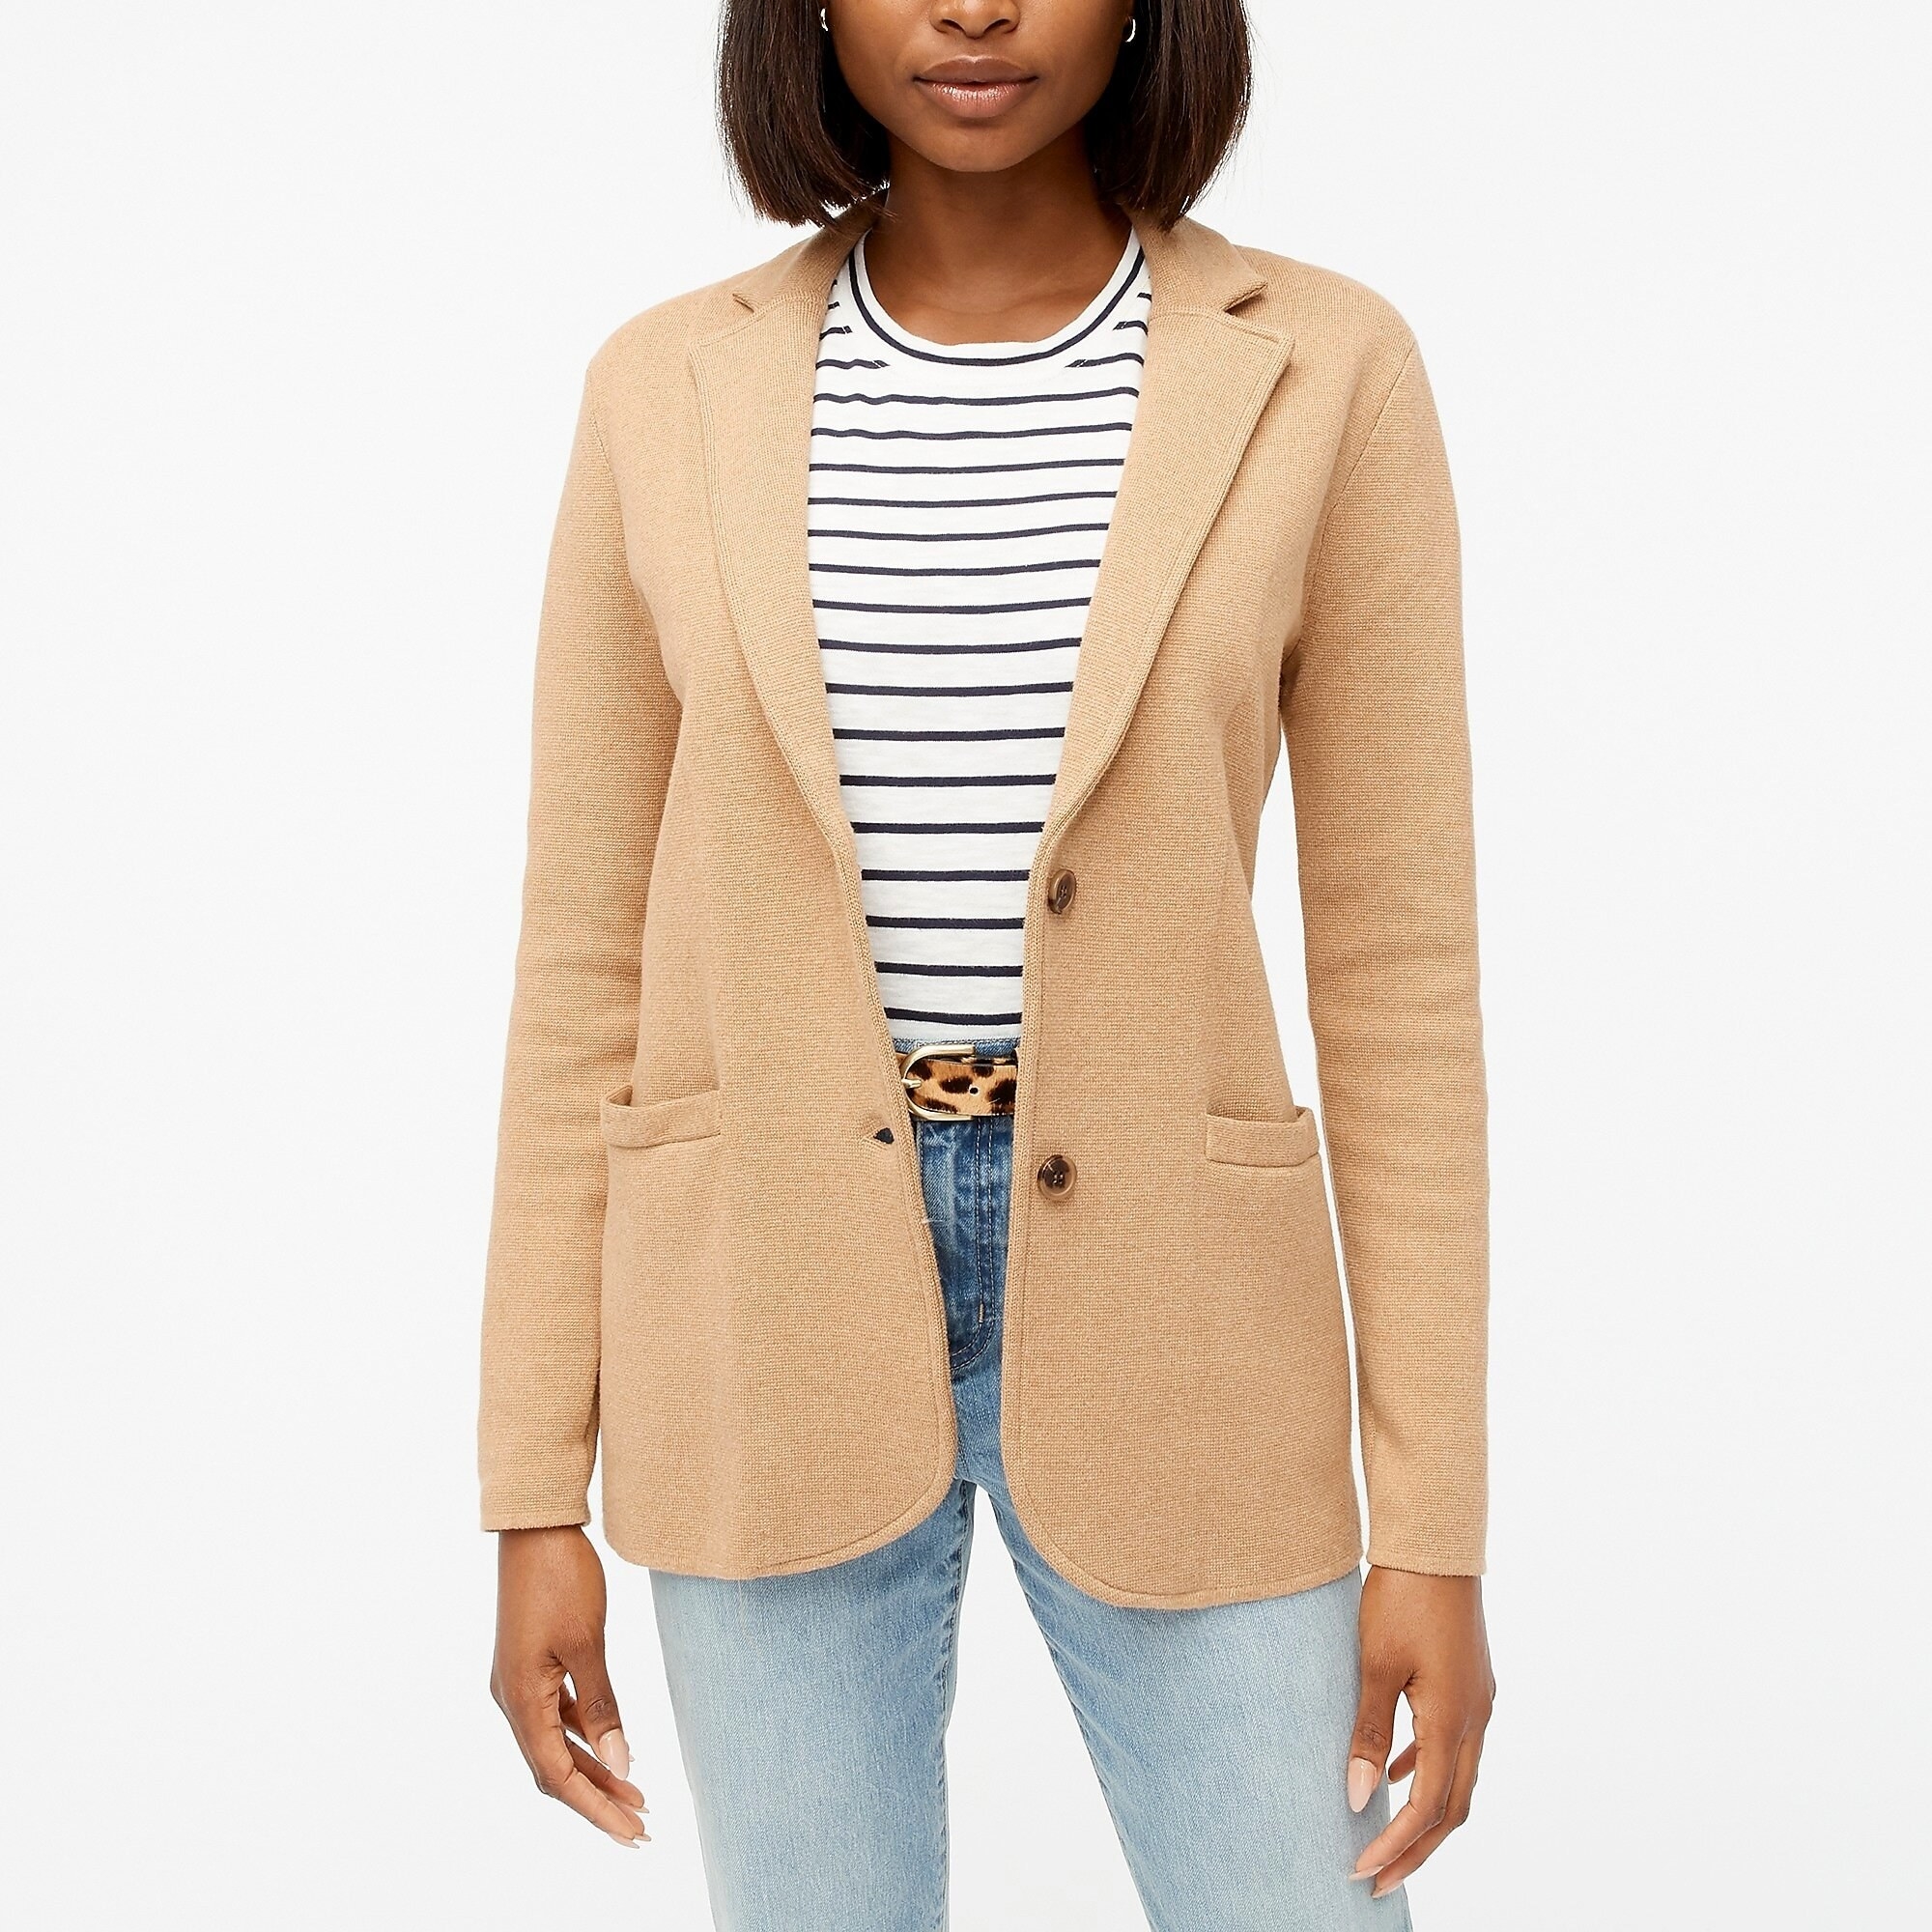 Model wearing the acorn sweater blazer